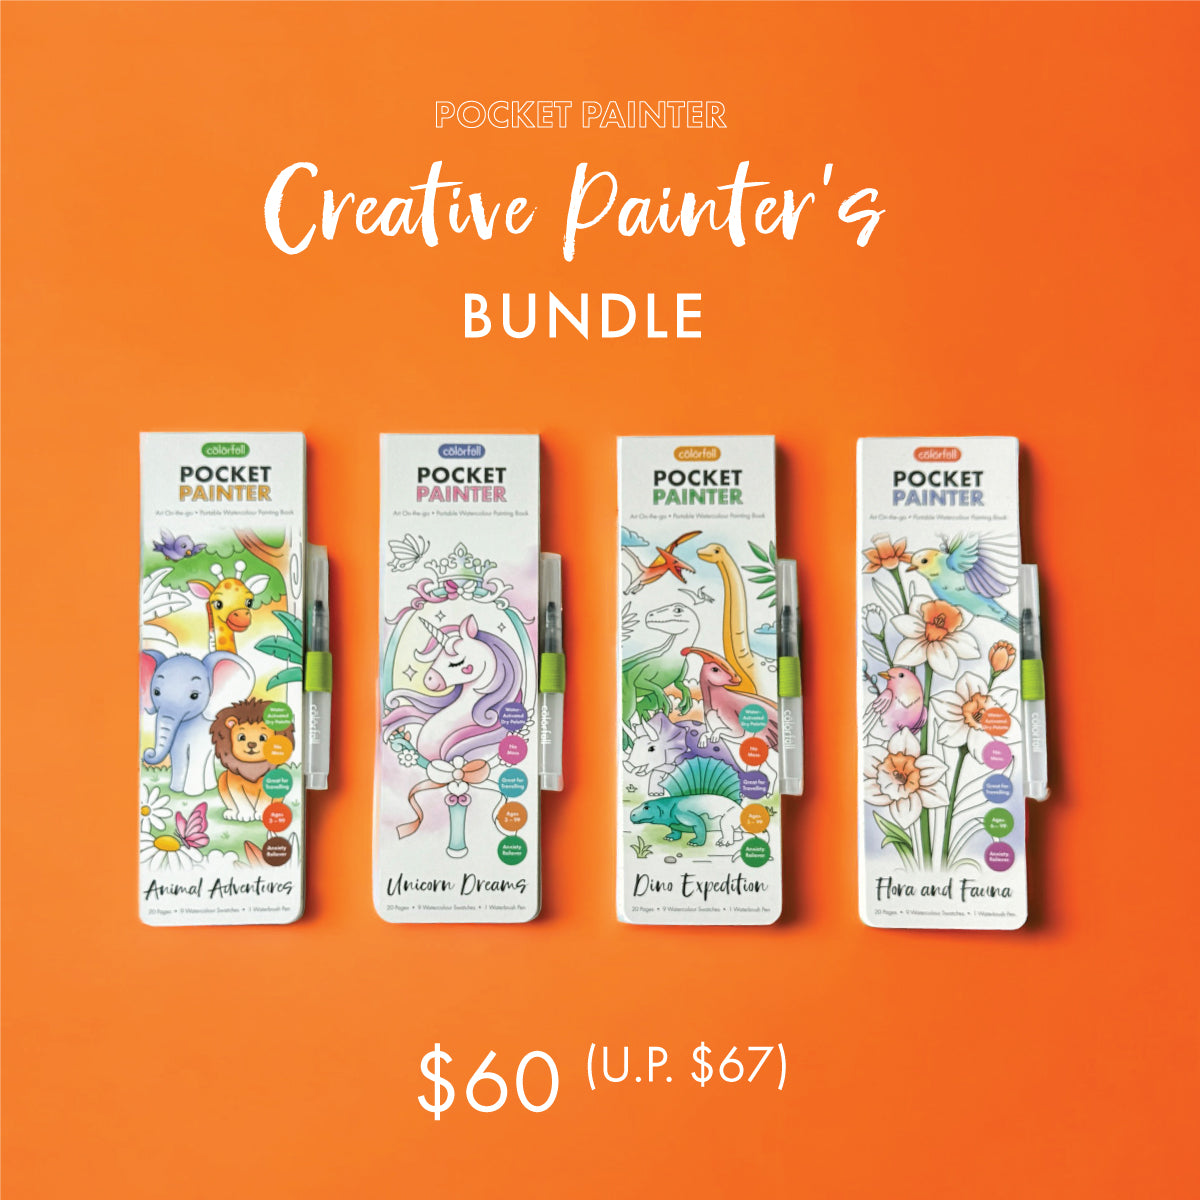 Creative Painter's Bundle - Pocket Painter Watercolour Painting Book (Set of 4)